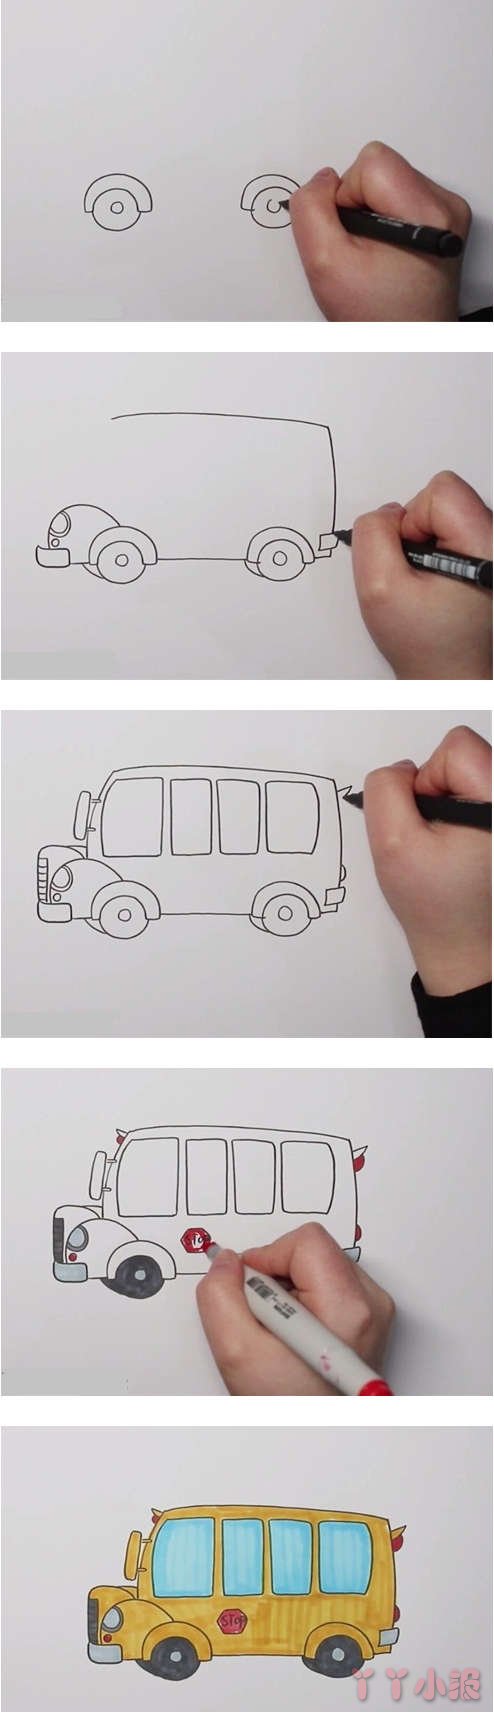   怎么画校车简笔画步骤教程涂色简单漂亮